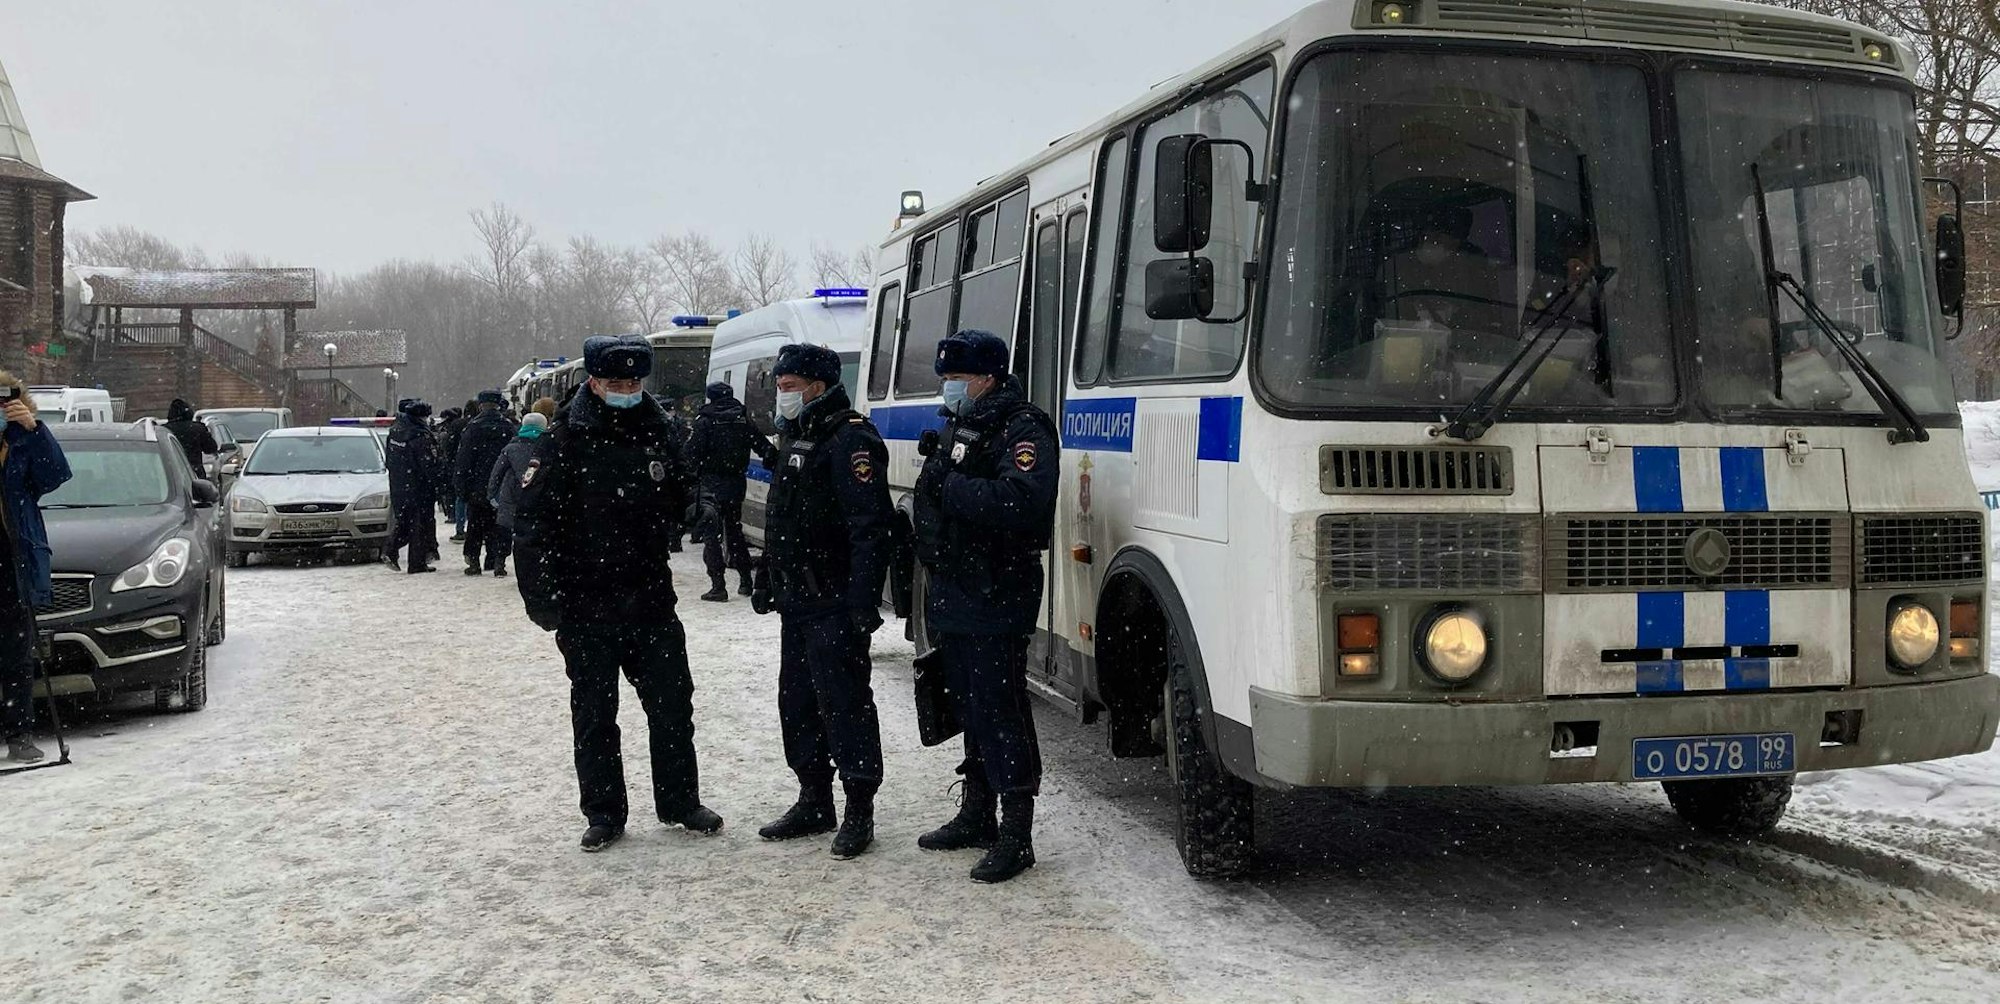 Russland Polizei Fahrzeug